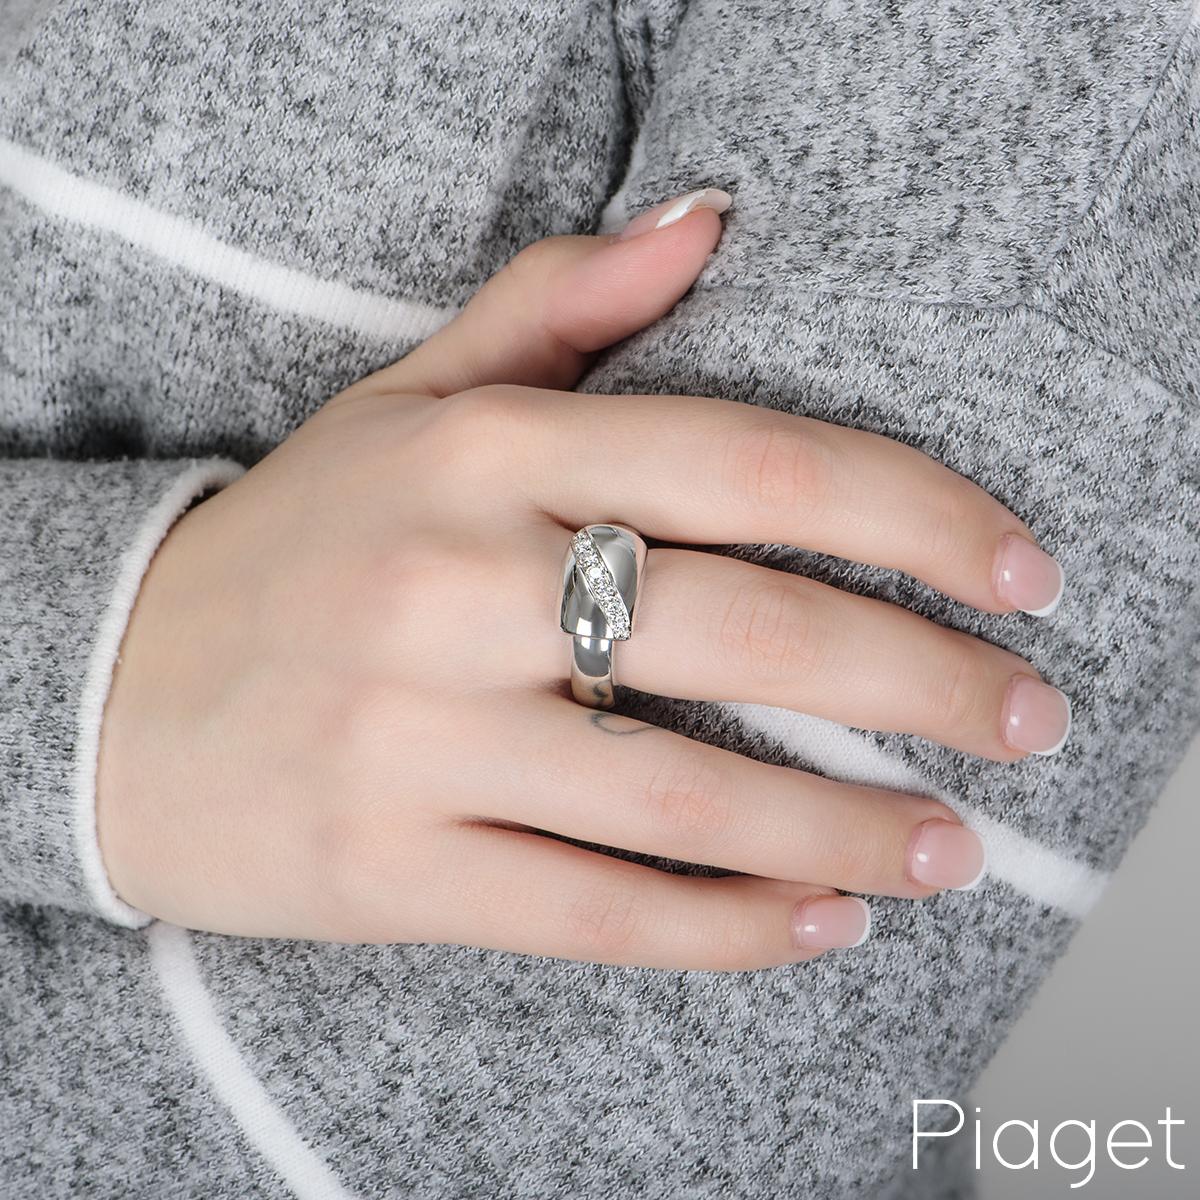 Women's Piaget White Gold Diamond Dancer Ring For Sale